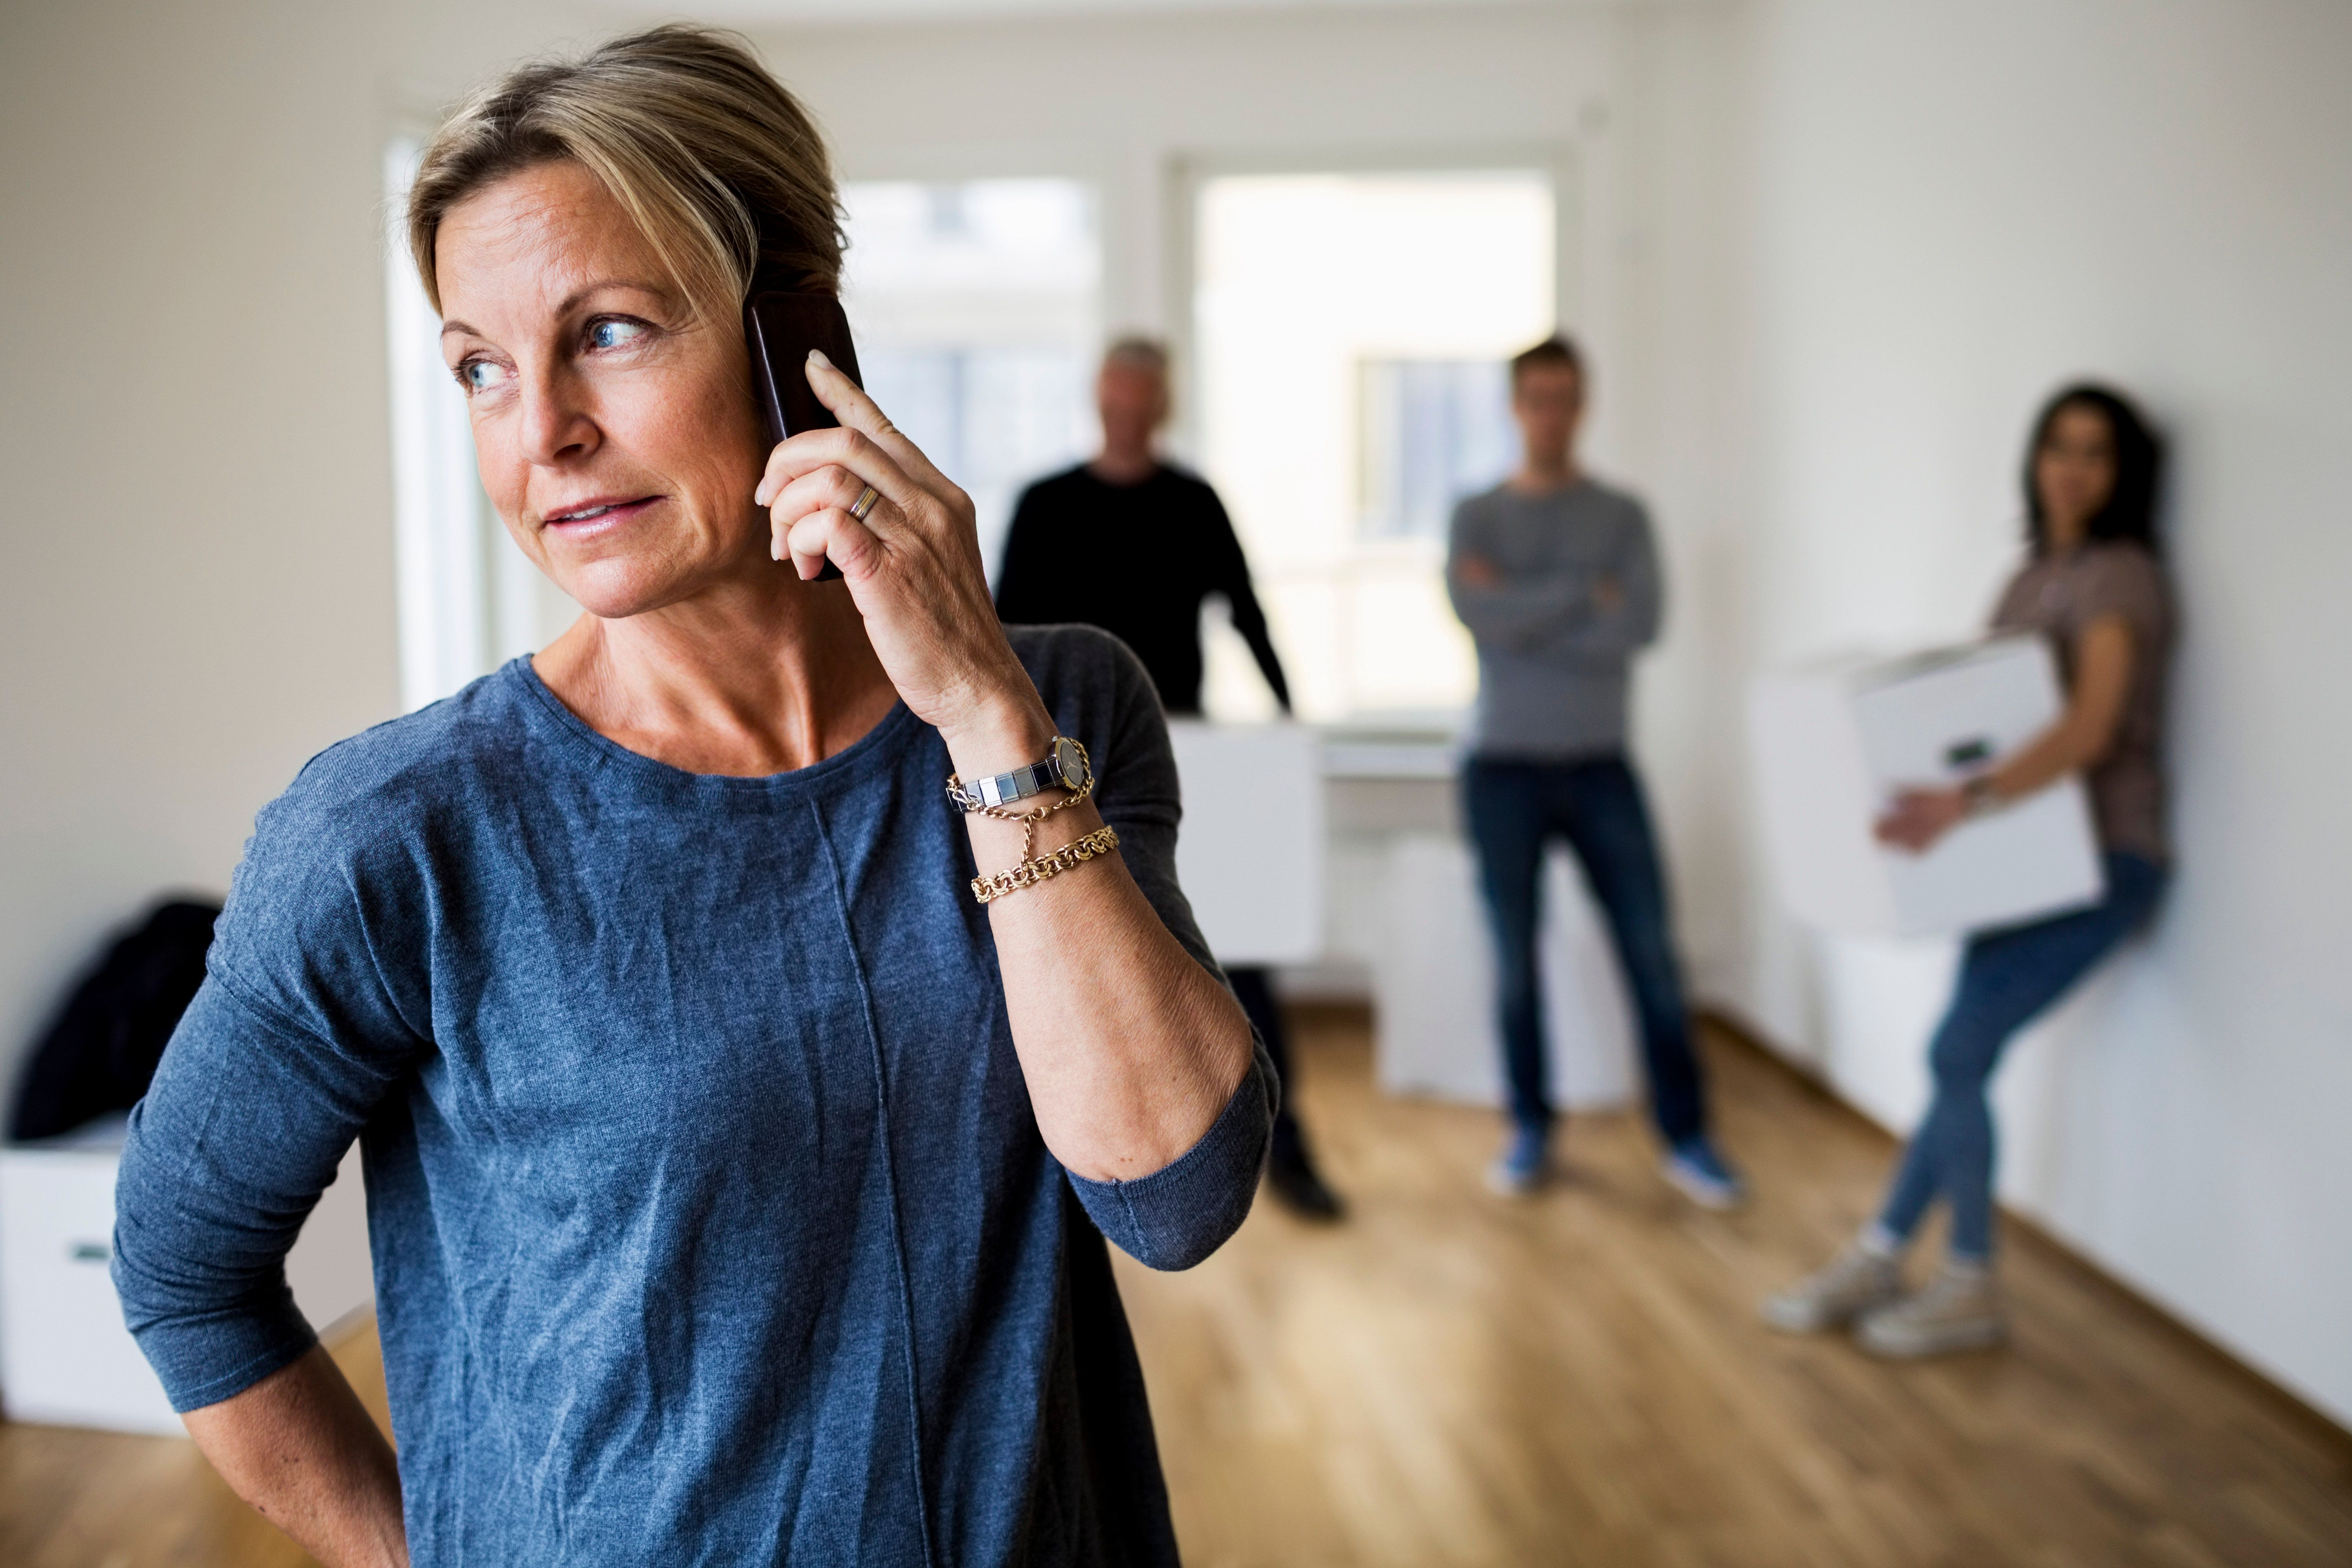 Eine Frau, die telefoniert, während hinter ihr Menschen stehen. | Quelle: Getty Images